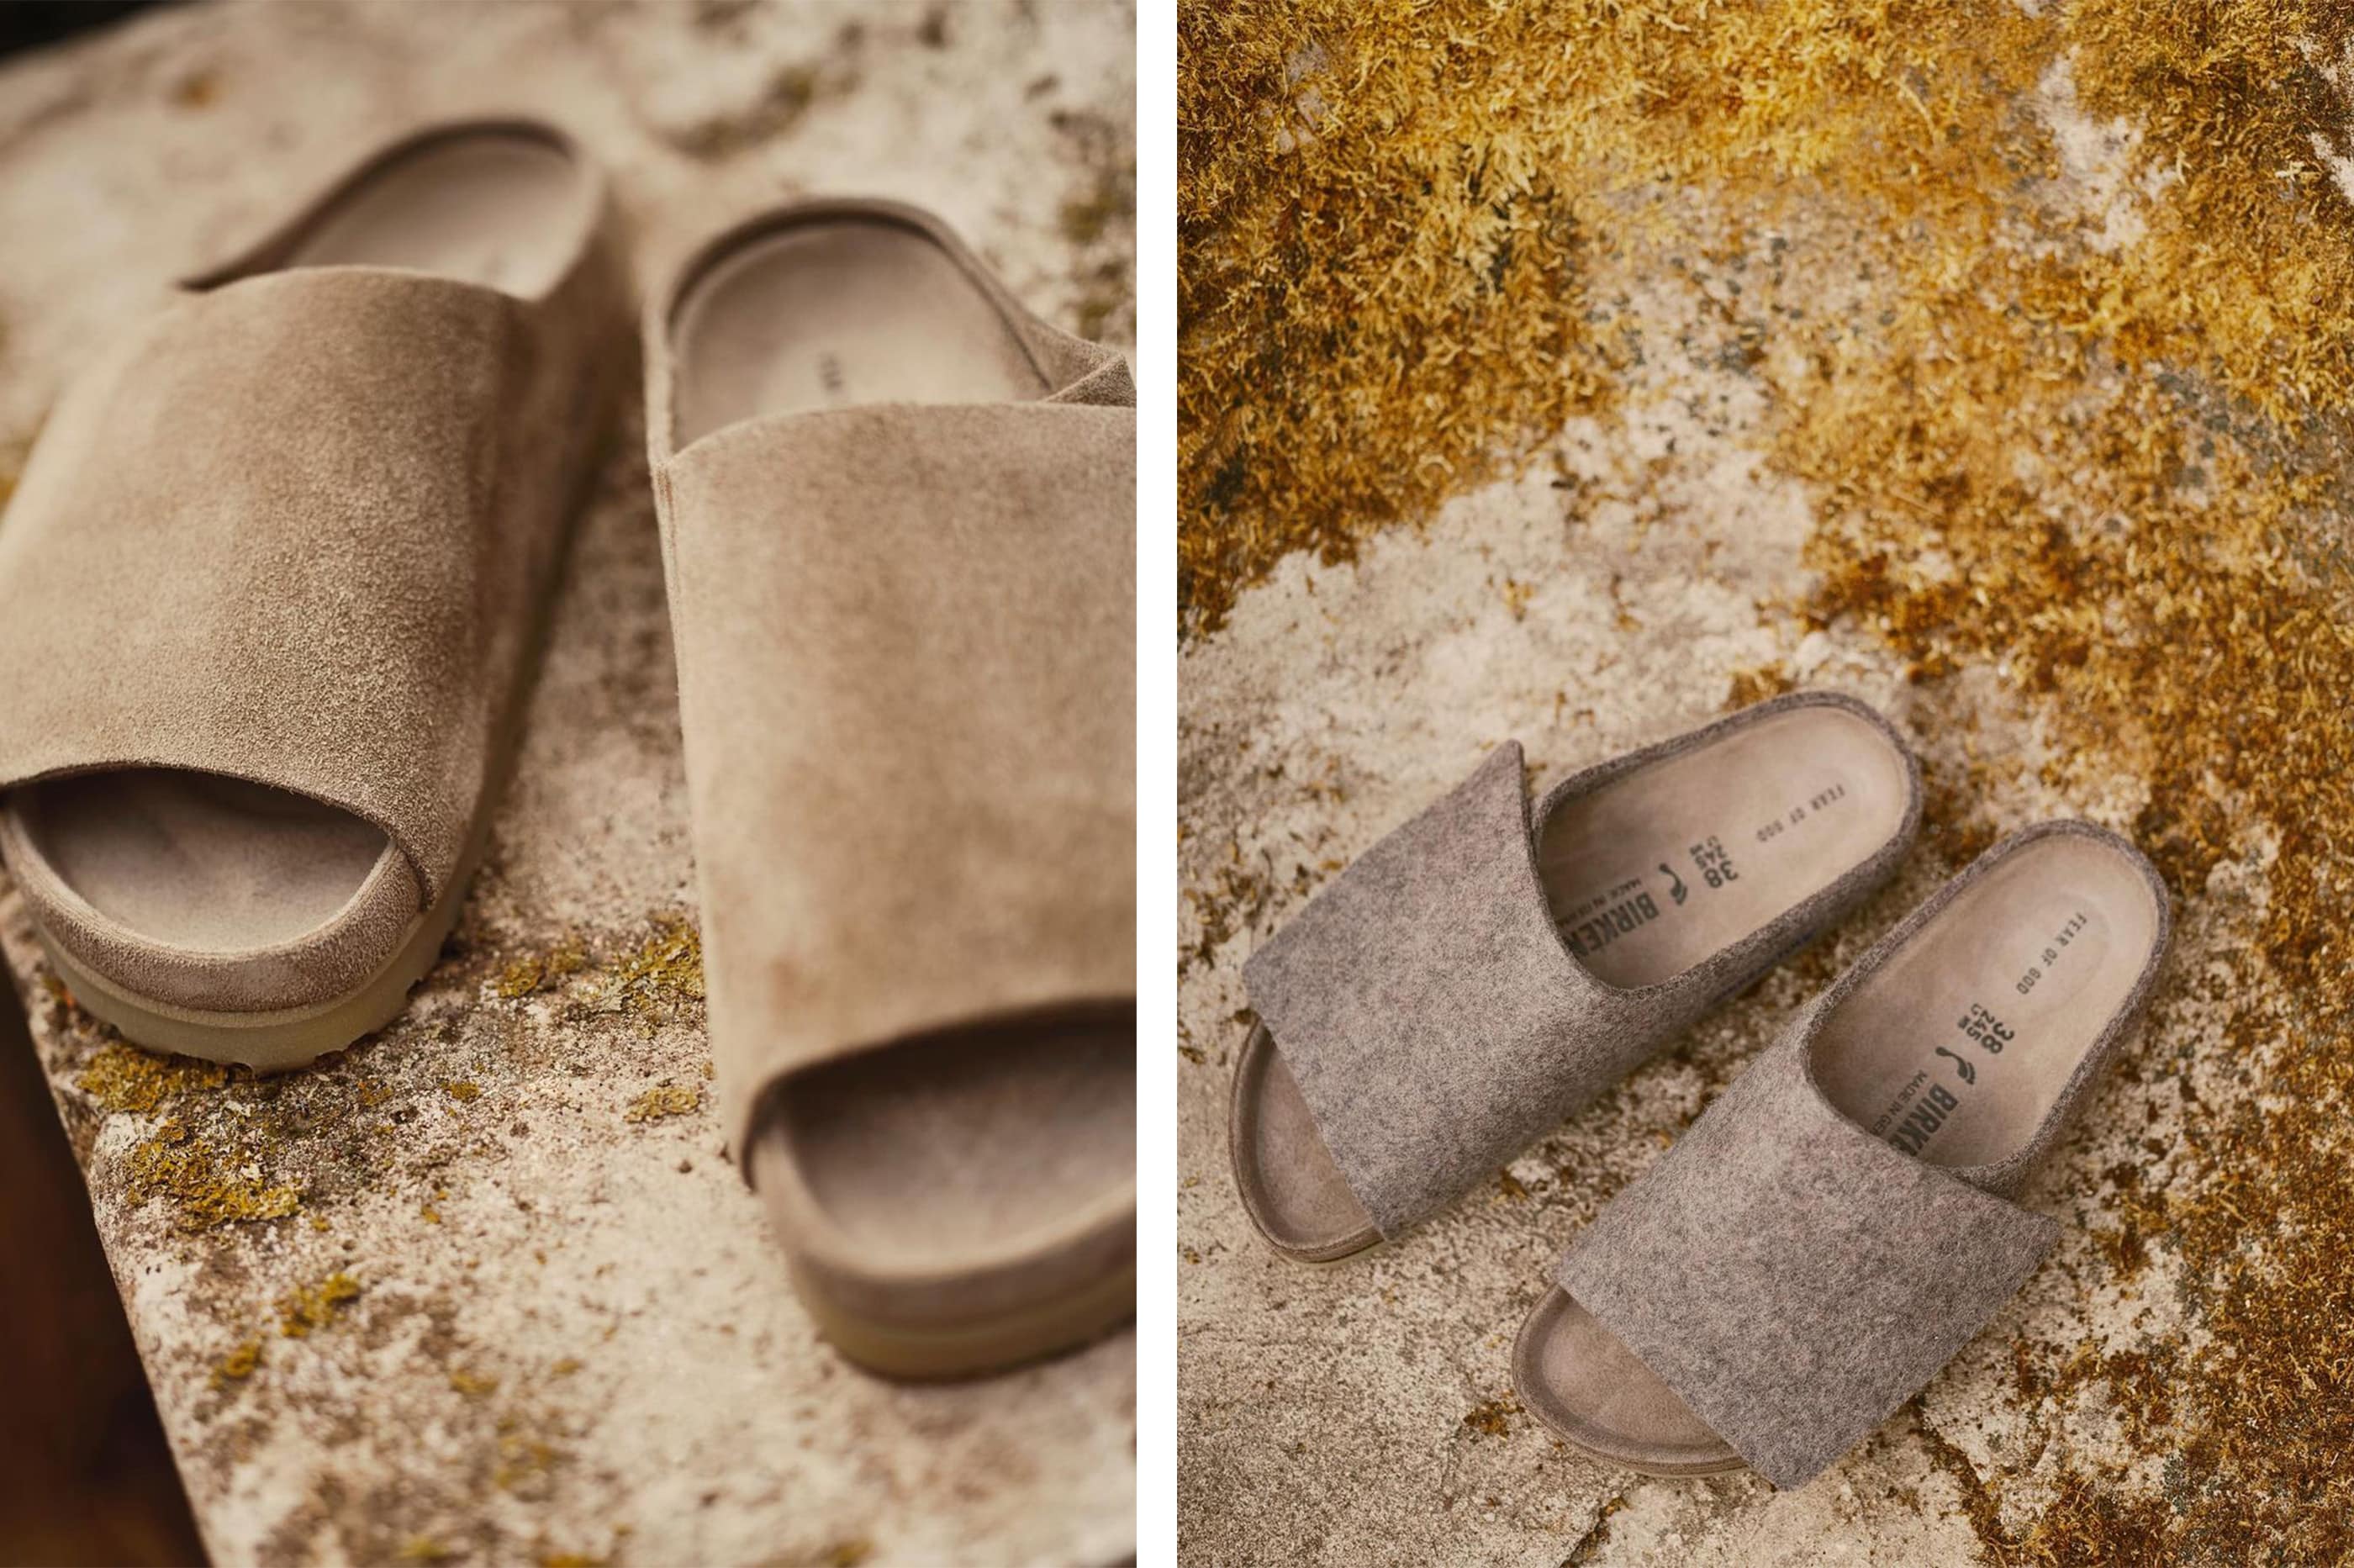 Louis Vuitton, Shoes, Louis Vuitton Birkenstock Collaboration Sandals